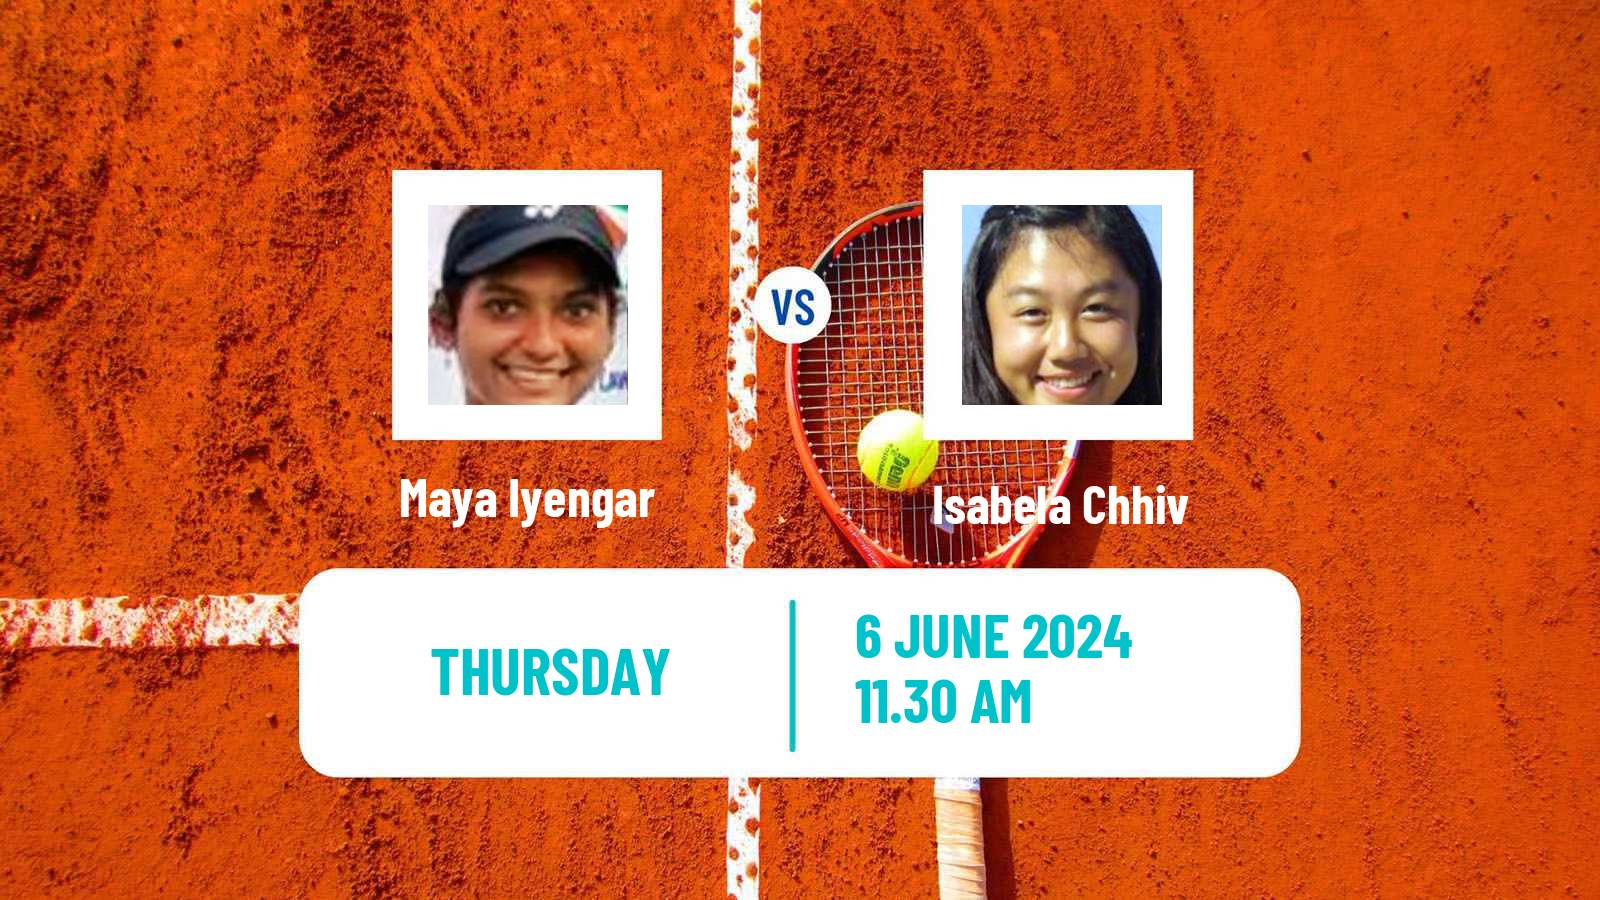 Tennis ITF W15 San Diego Ca 2 Women Maya Iyengar - Isabela Chhiv